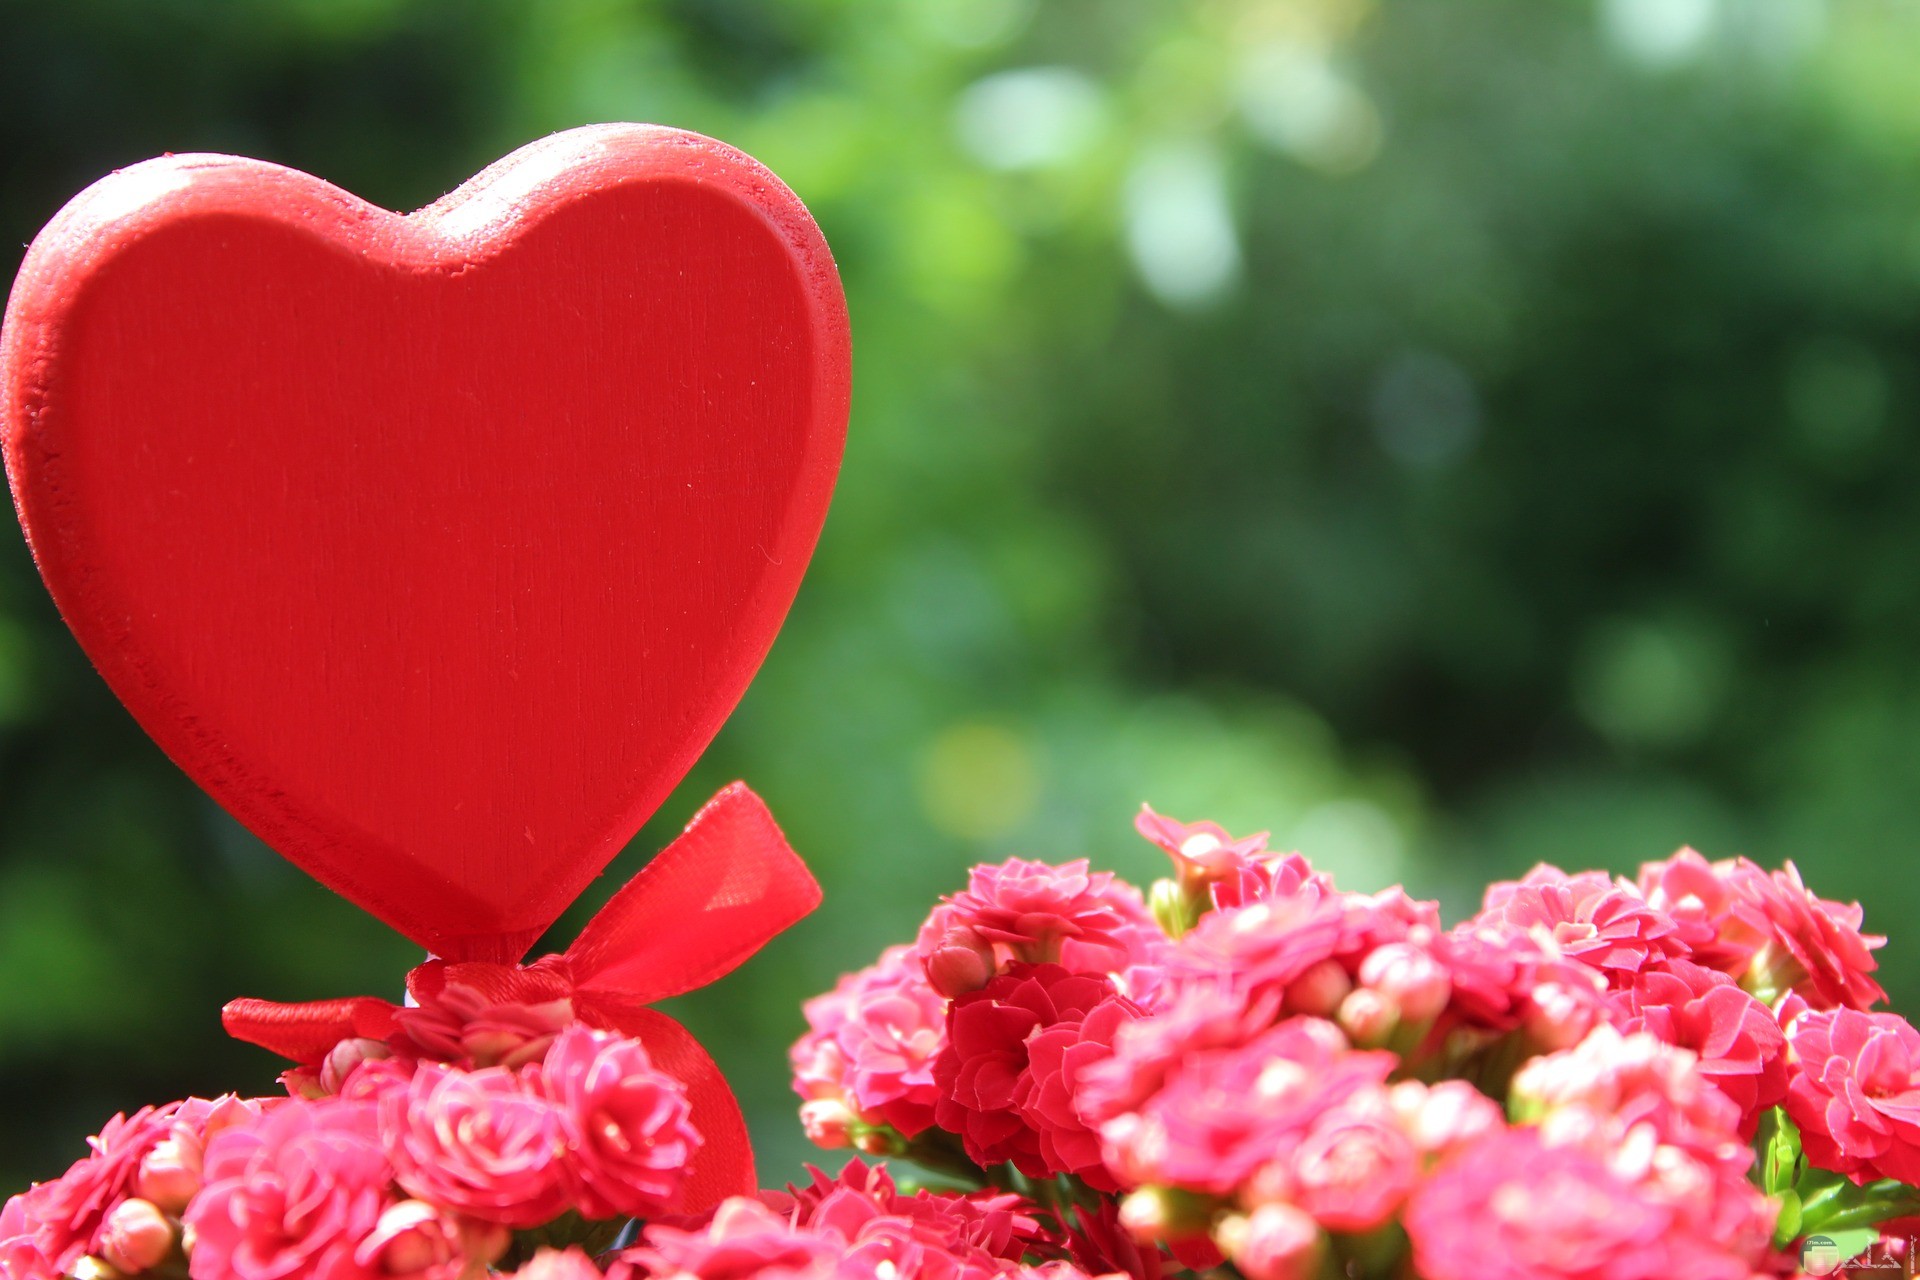 القلب منبع الحب و الرومانسية.